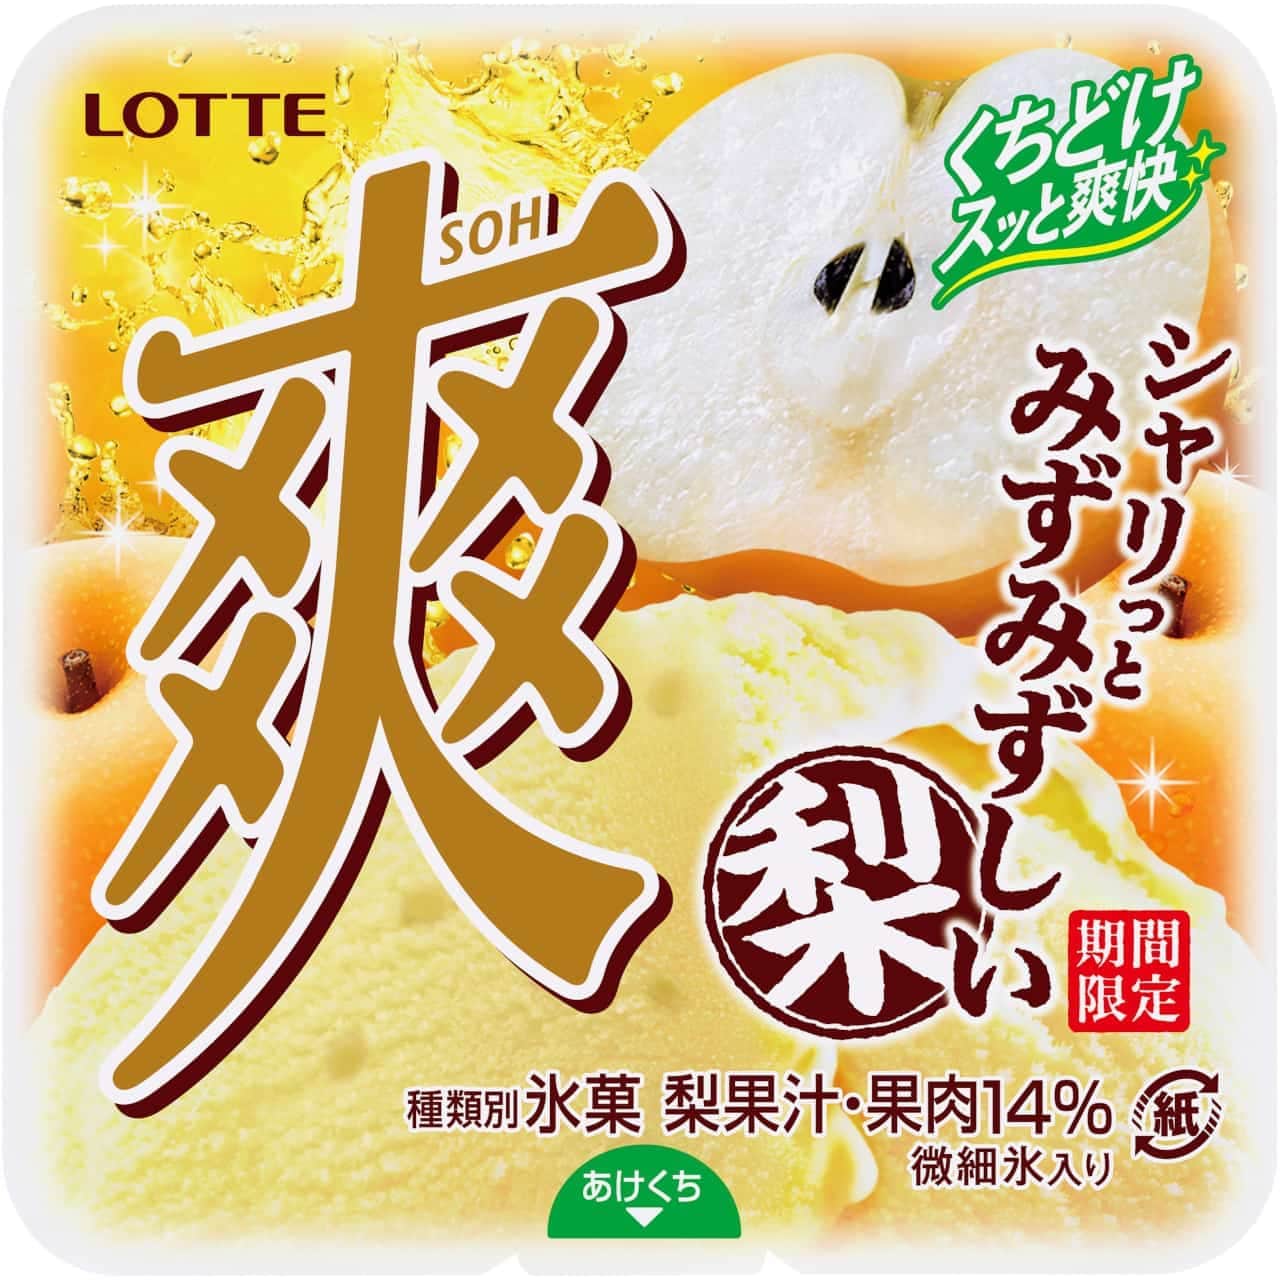 Lotte's ice cream "Sou Pear".